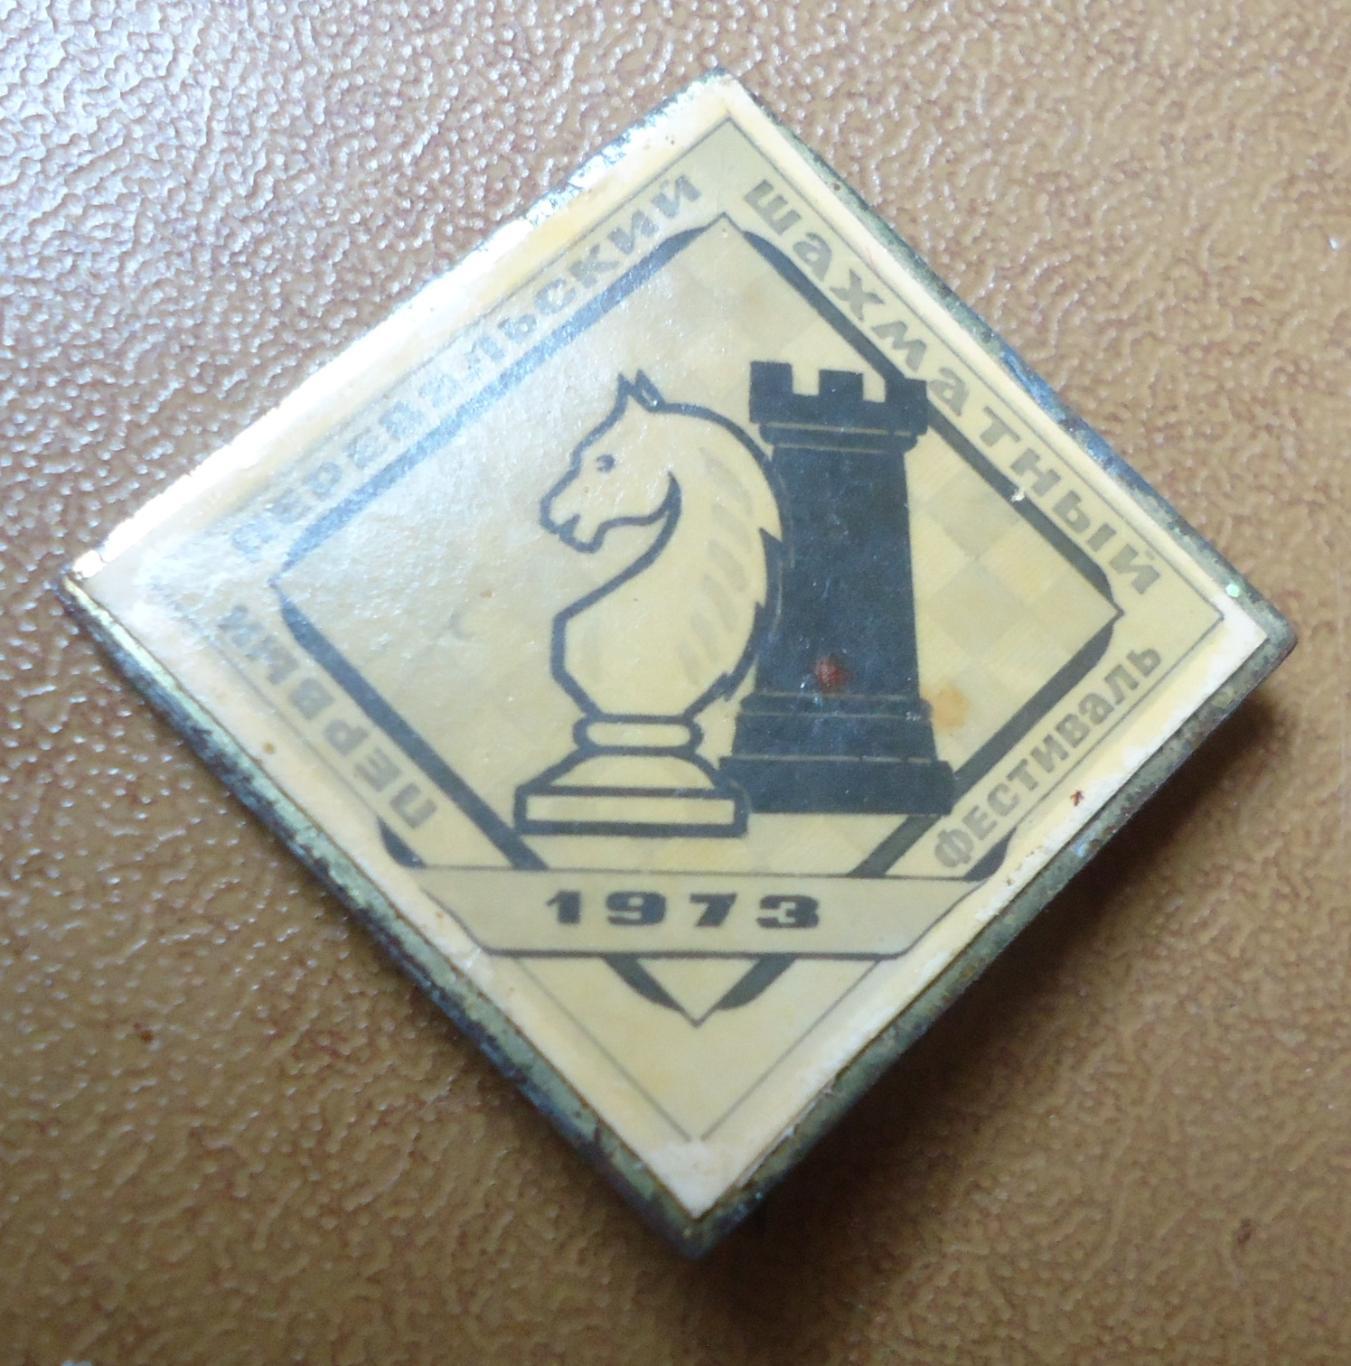 Знак:ШАХМАТЫ- Первый перевальский шахматный фестиваль1973